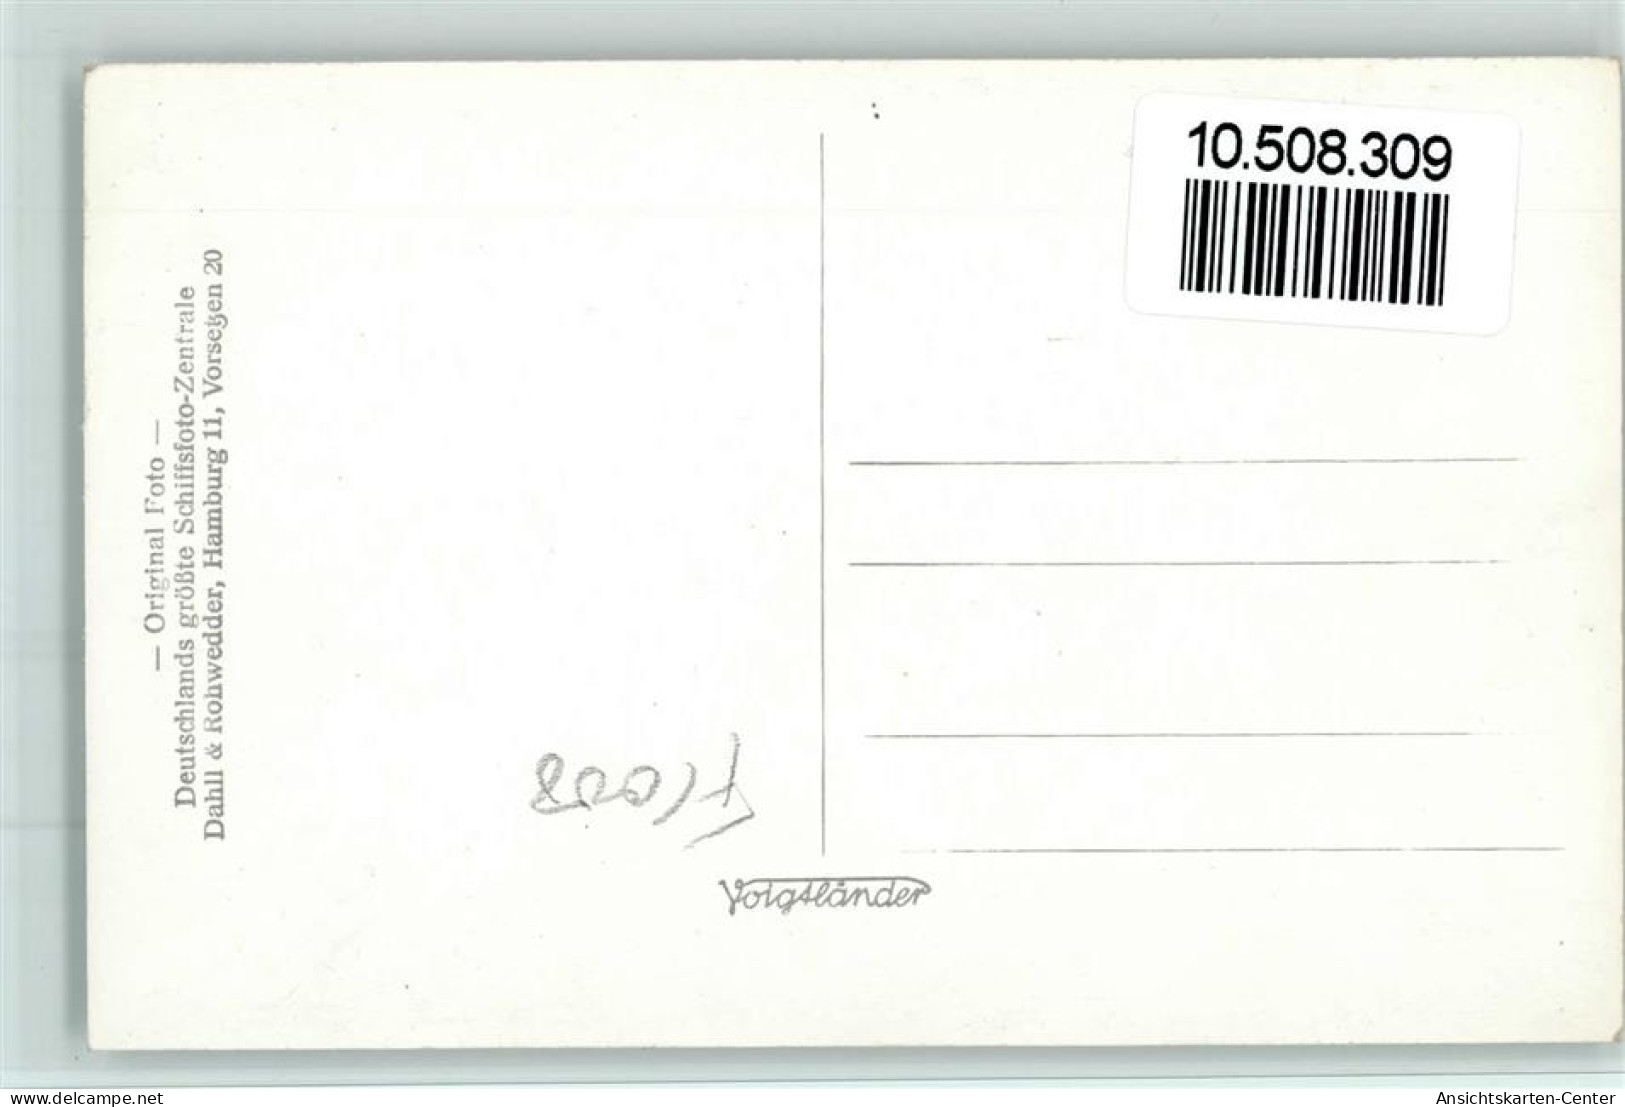 10508309 - Norddeutscher Lloyd Kronprinzessin Cecilie - Piroscafi